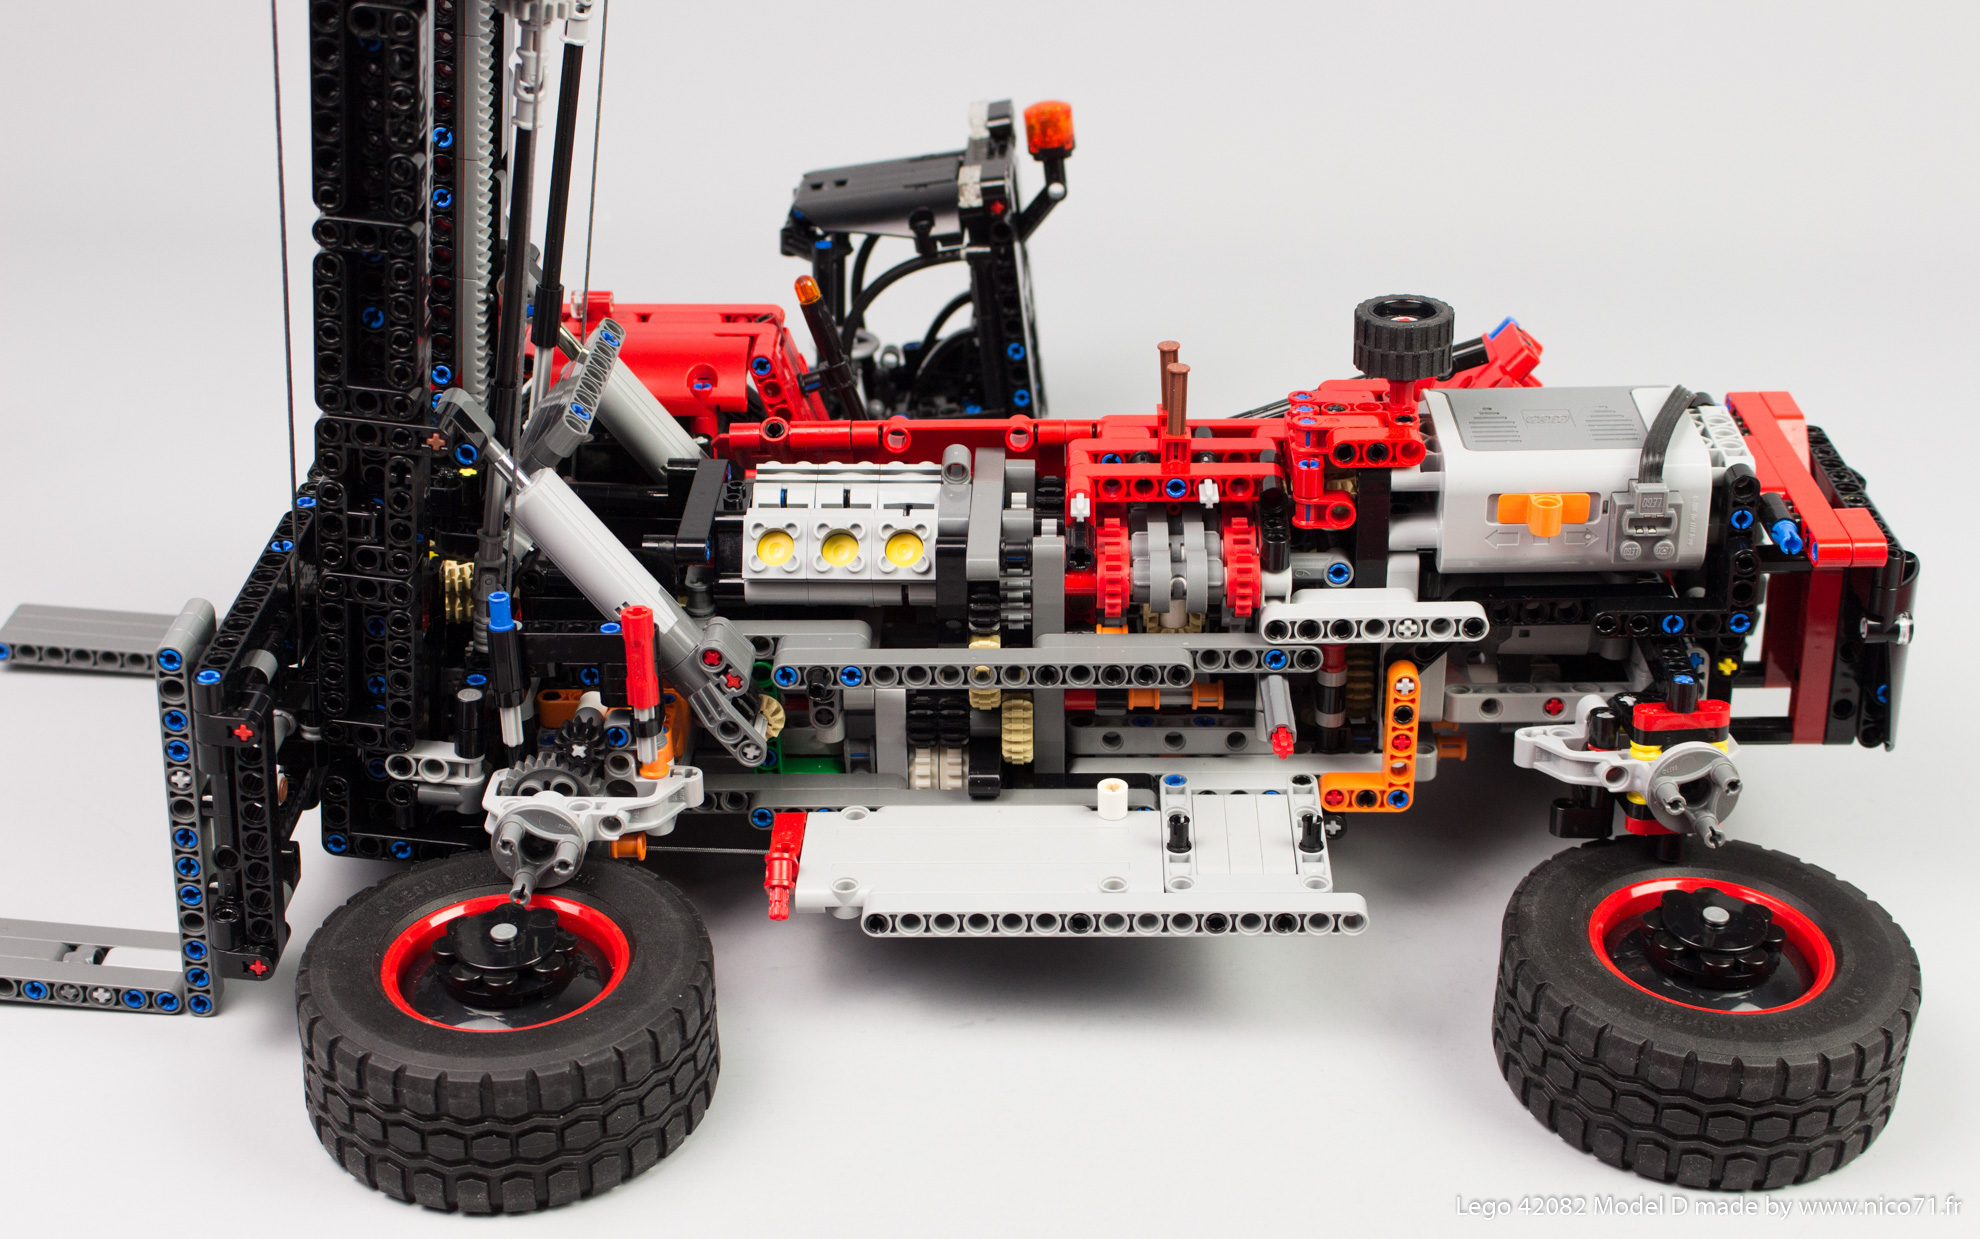 Lego-42082-Model-D-Heavy-Forklift-27